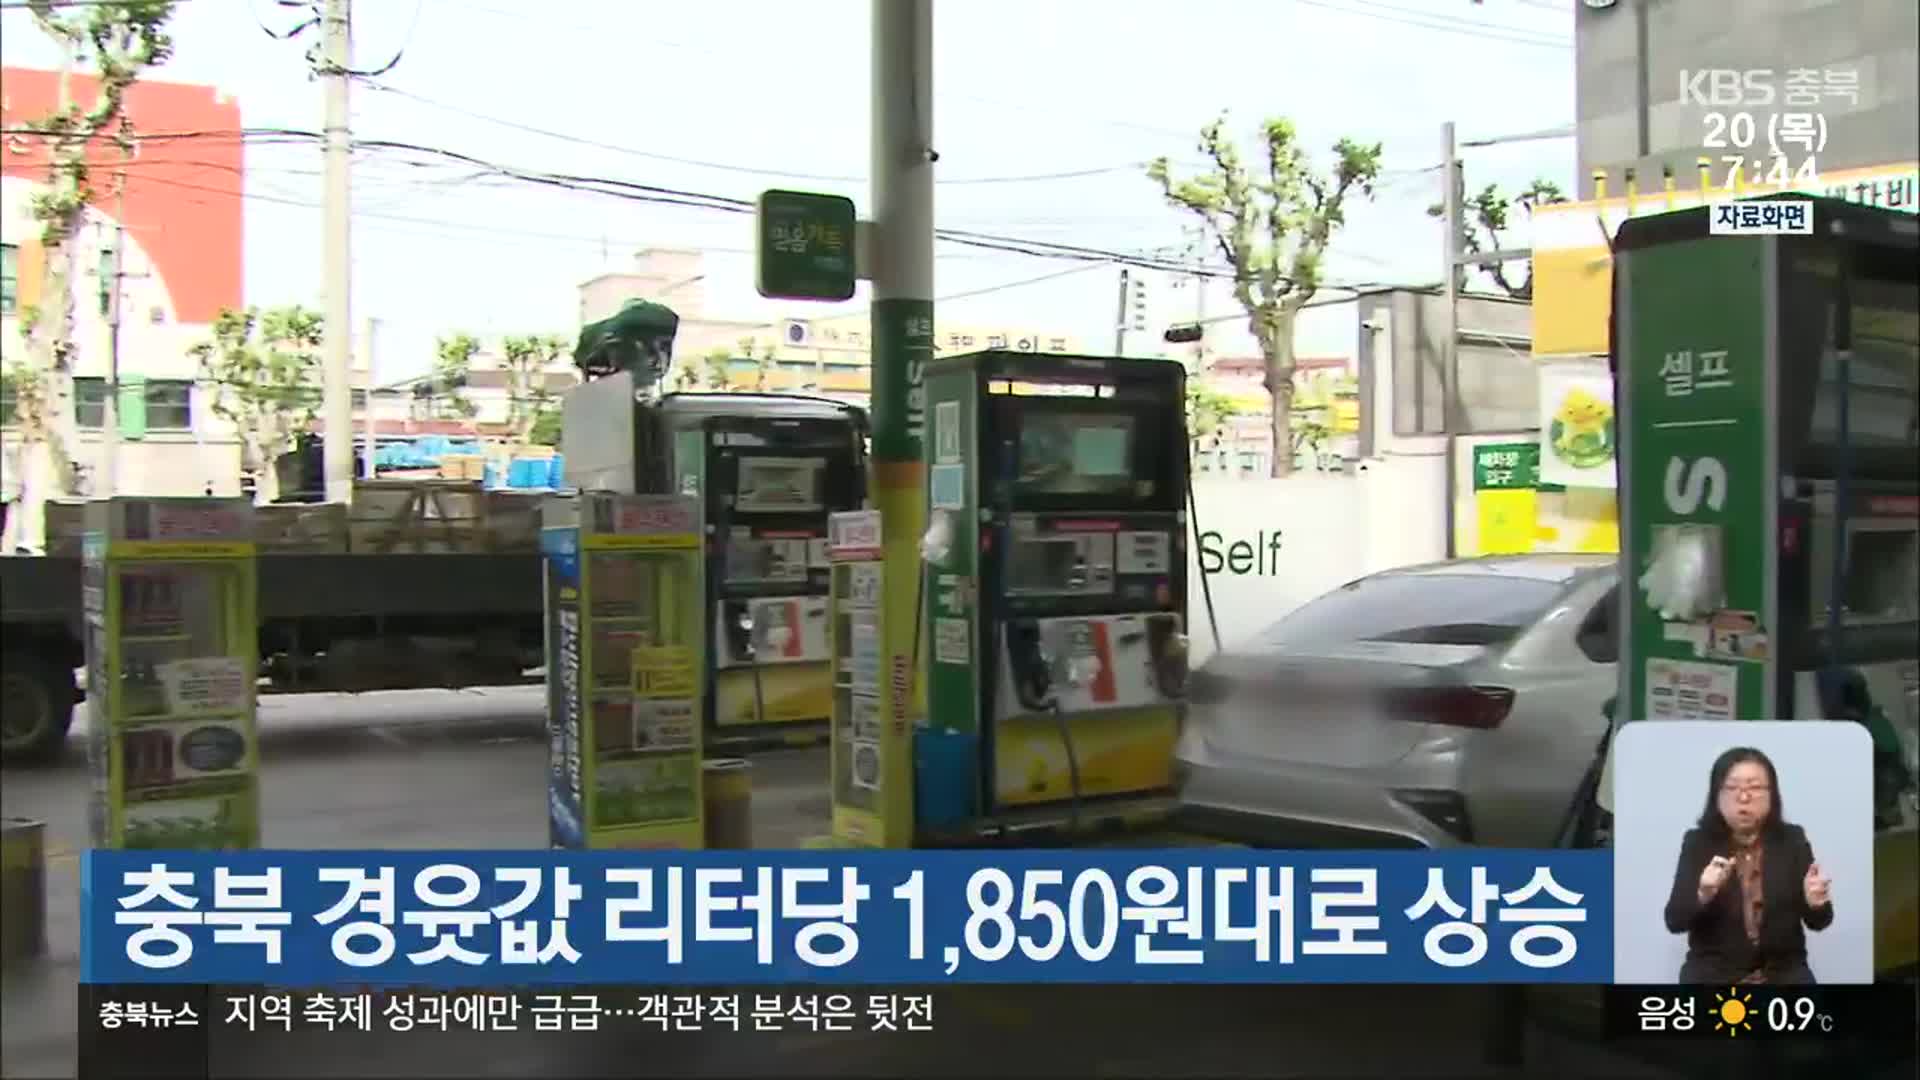 충북 경윳값 리터당 1,850원대로 상승